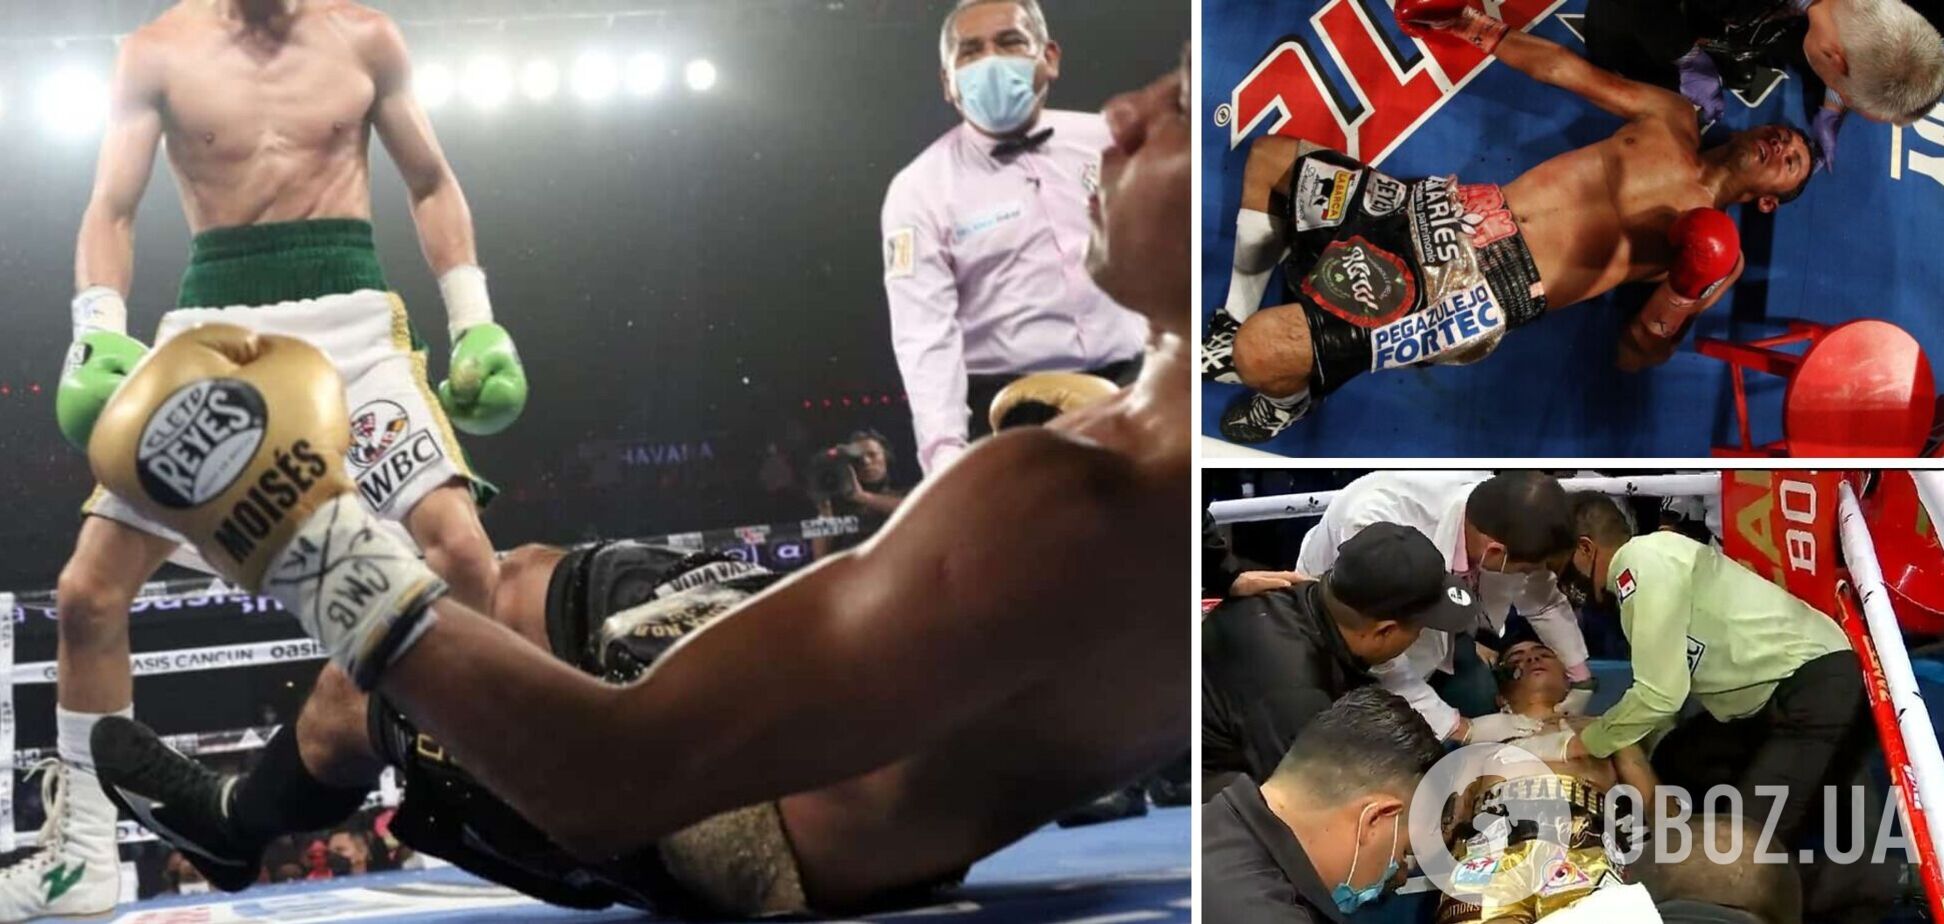 Экс-чемпион мира по боксу умер после тяжелейшего нокаута. Видео